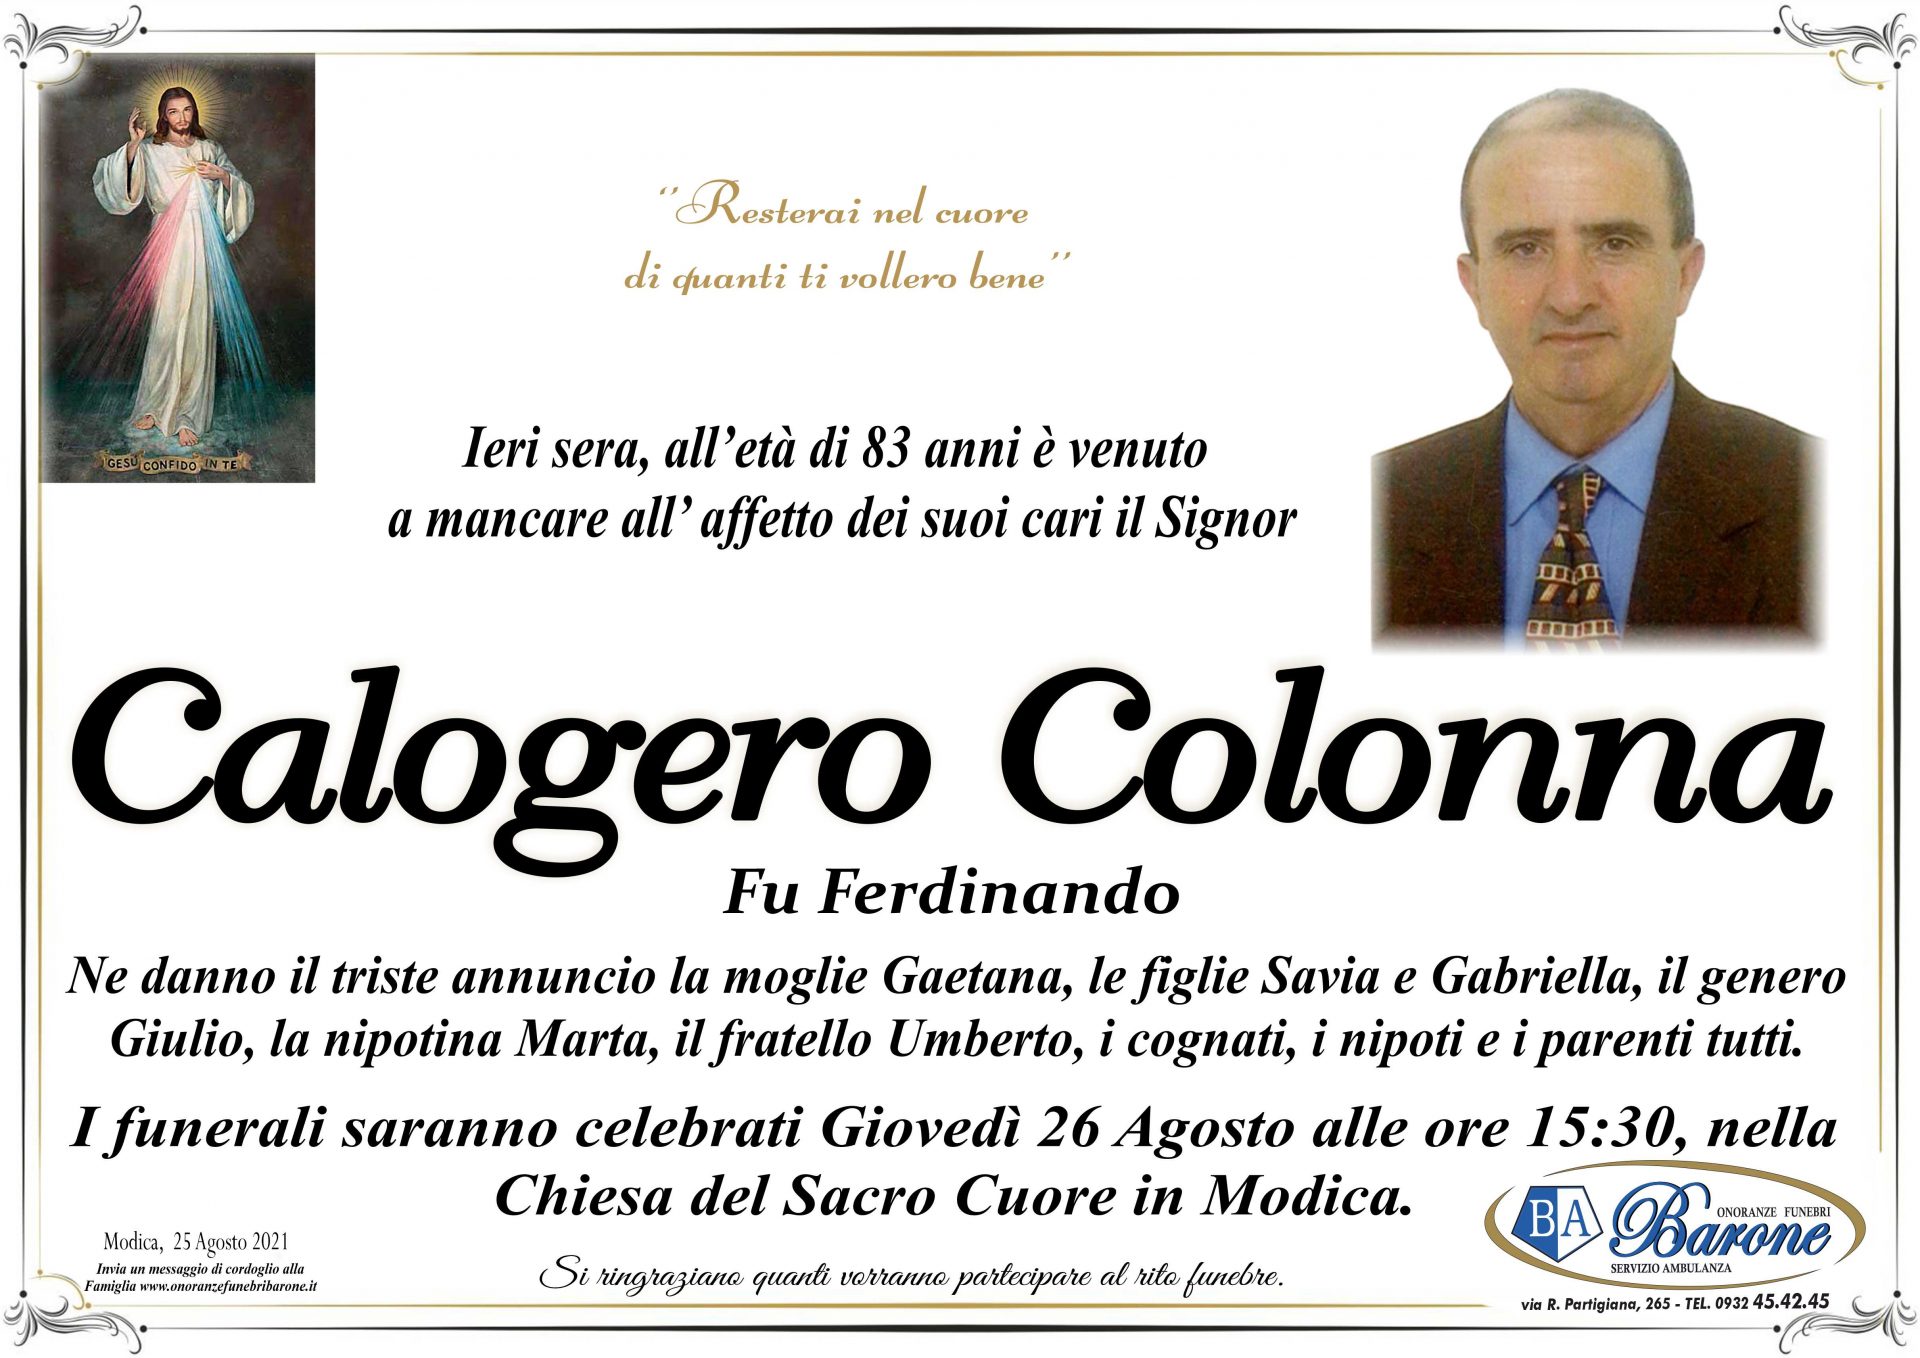 Calogero Colonna